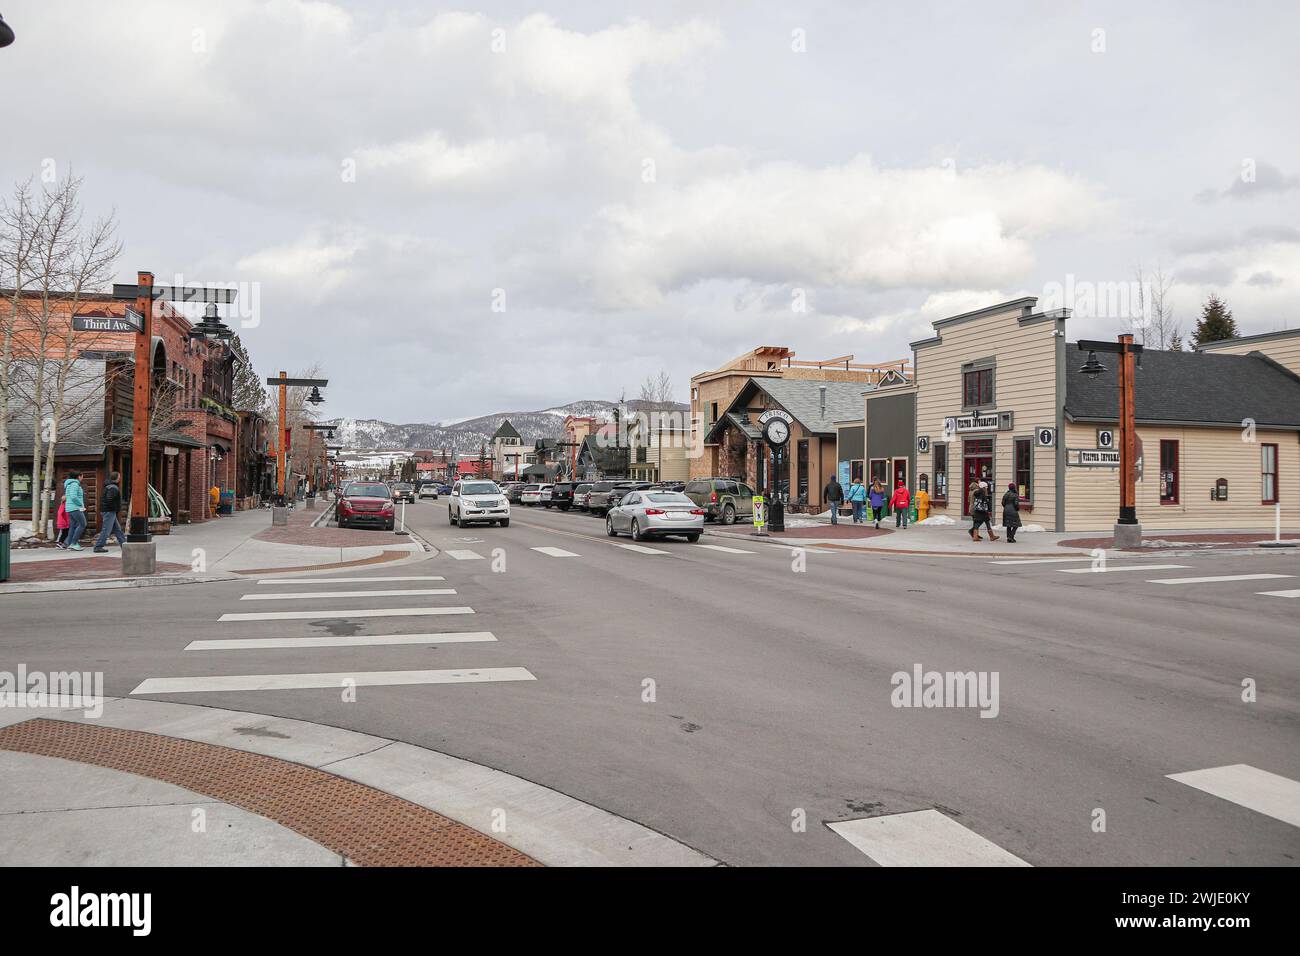 Straße in Frisco, Colorado, an einem verschneiten Tag. Malerische nordamerikanische Stadt im Herzen der rockies. Ein gewisser Verkehr ist sichtbar. Stockfoto